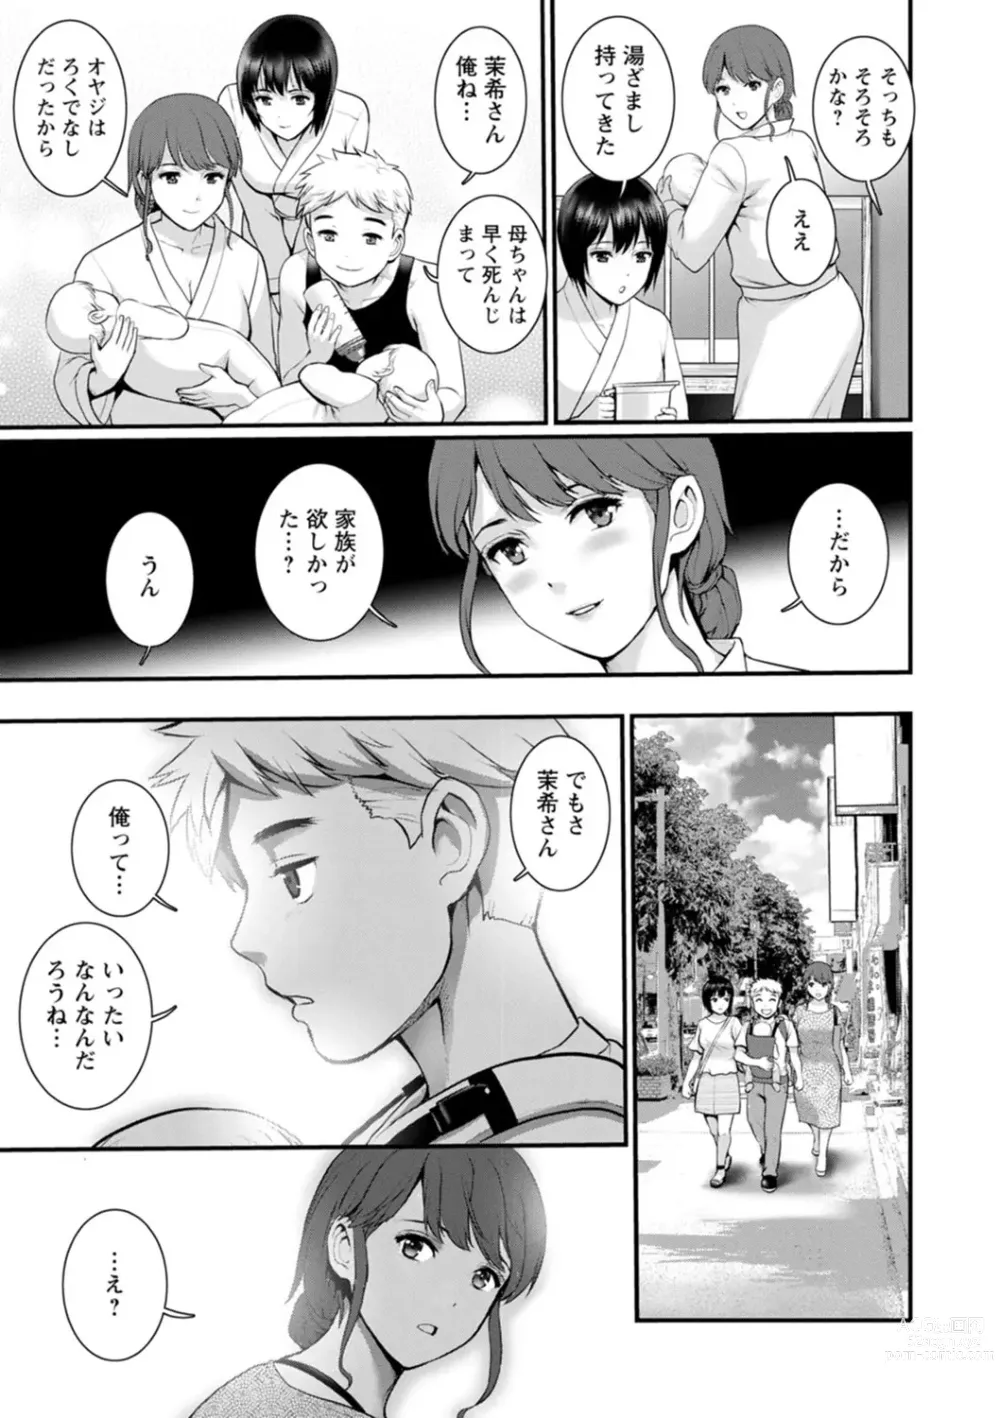 Page 181 of manga Meshibe no Nomikomi yuku Hate ni Meshibe no Sakihokoru Shima de 2